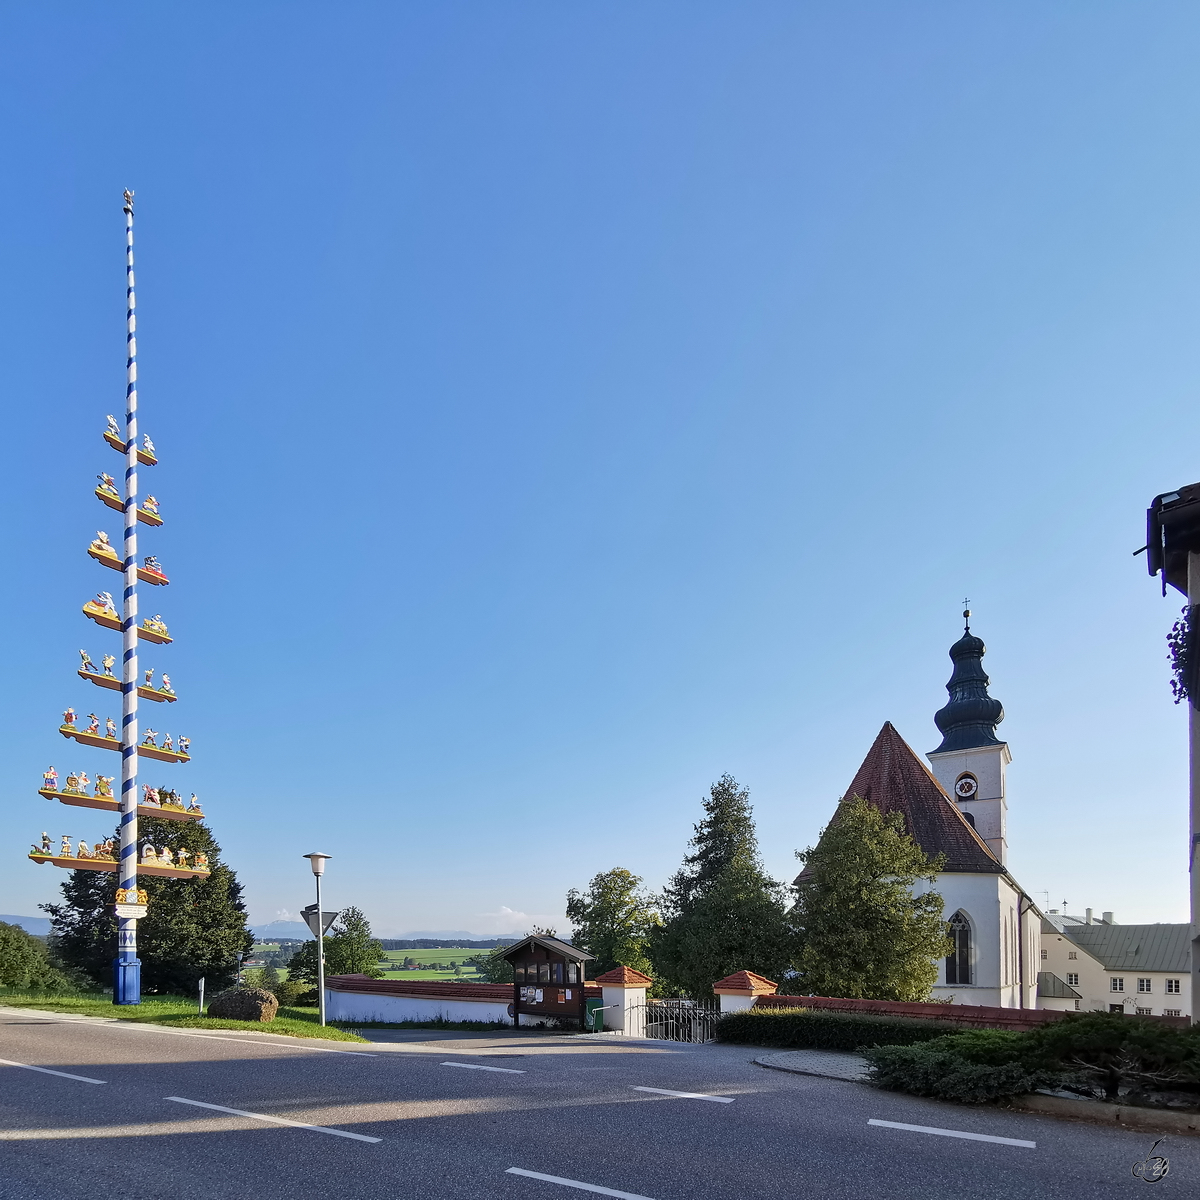 Der Ortseingang von Otting mit dem markanten Maibaum und der Pfarrkirche St. Stephanus. (August 2020)